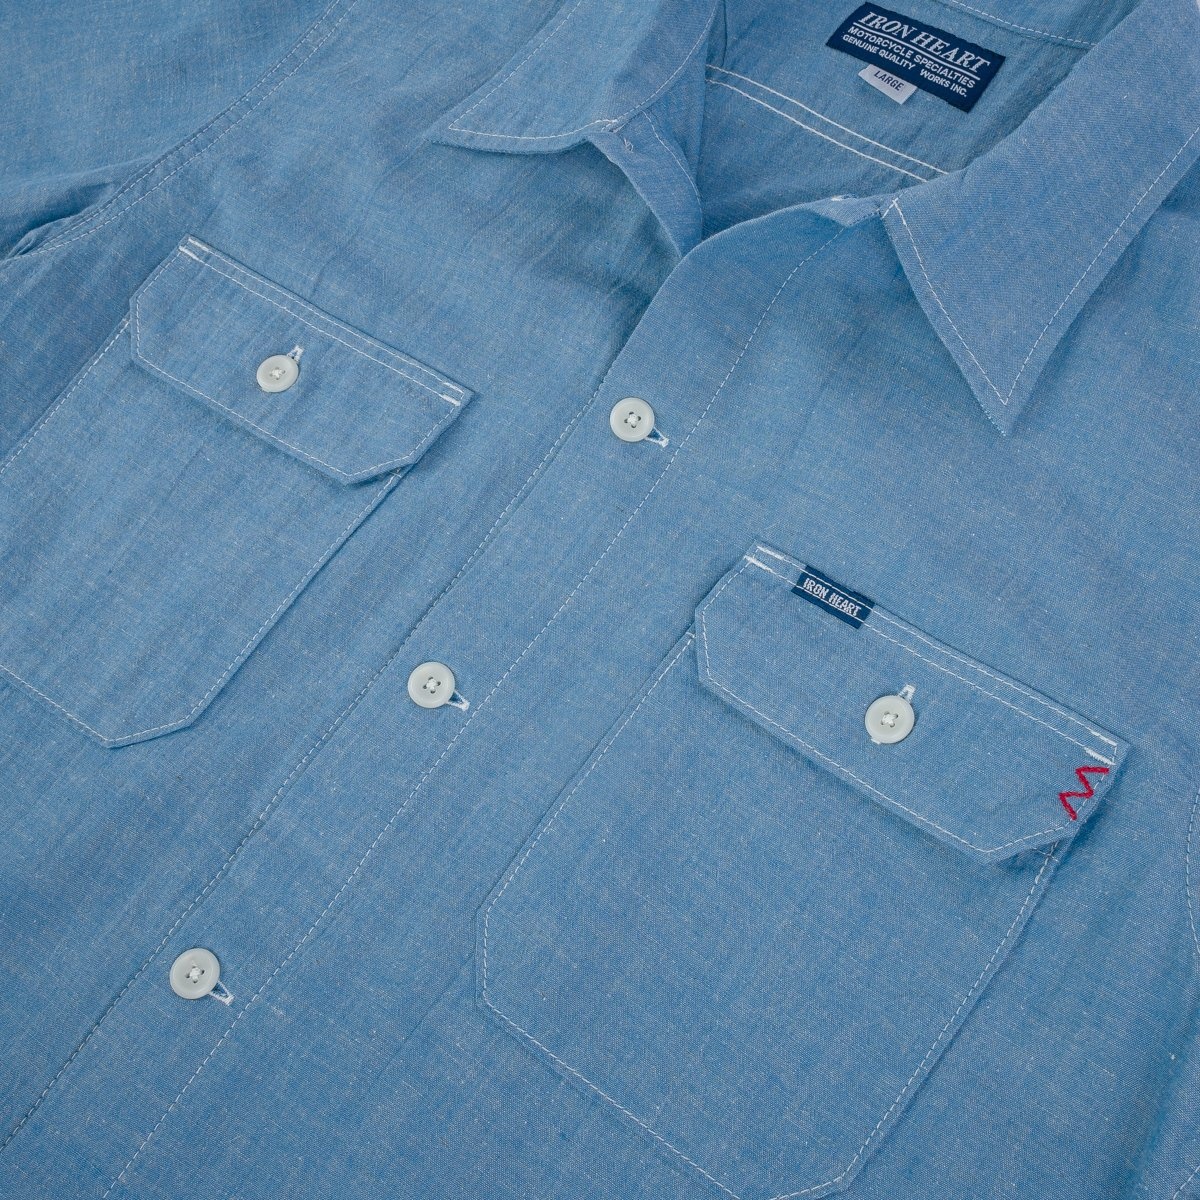 IHSH-388-BLU 4oz Selvedge Short Sleeved Summer Shirt - Blue - 10